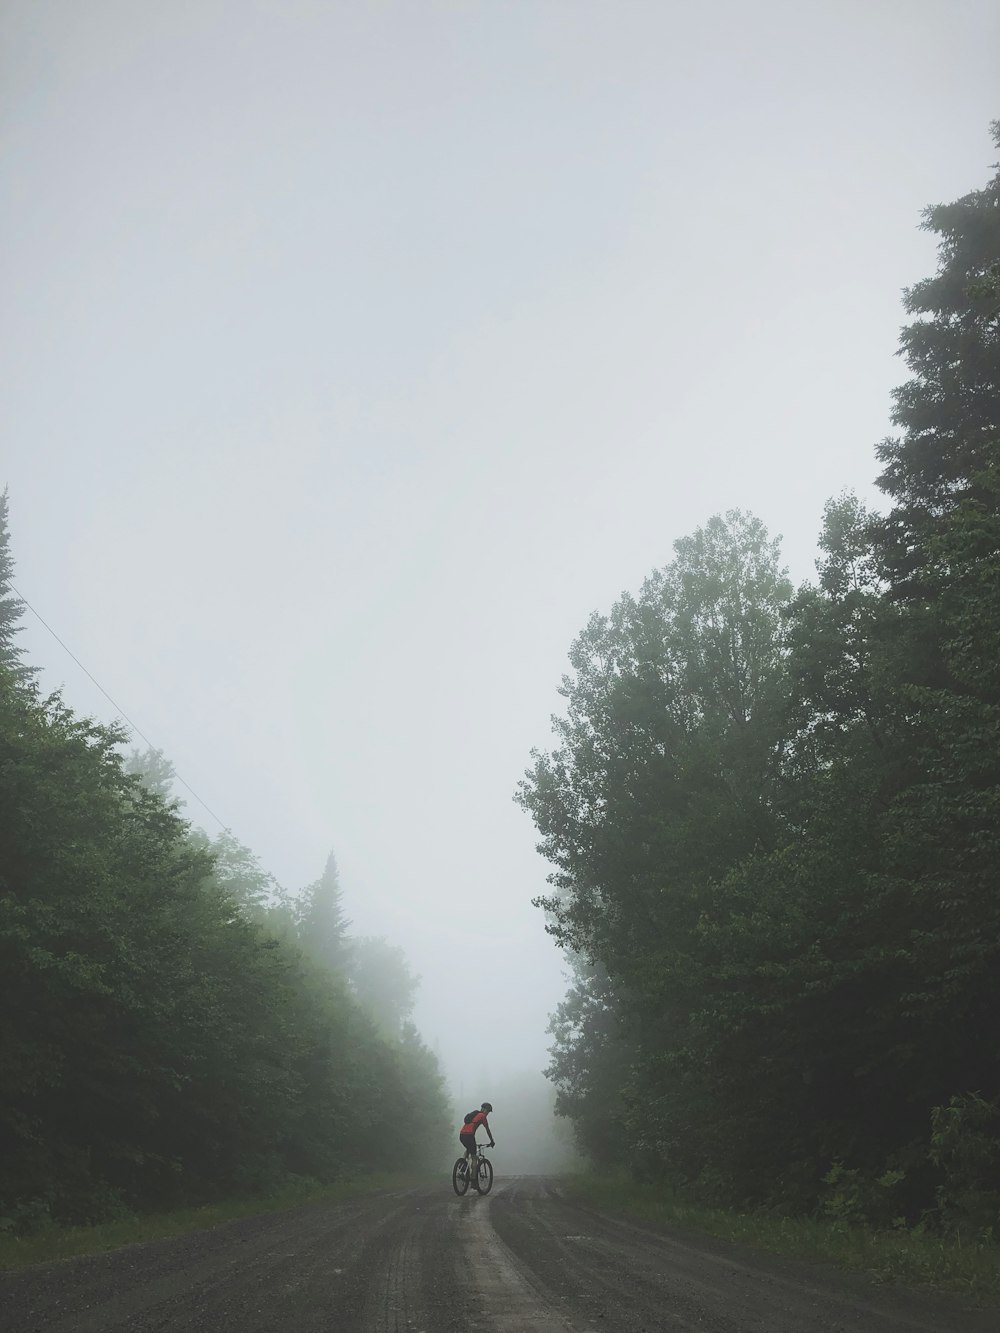 Persona que anda en bicicleta por la carretera rodeada de árboles altos y verdes durante un día de niebla